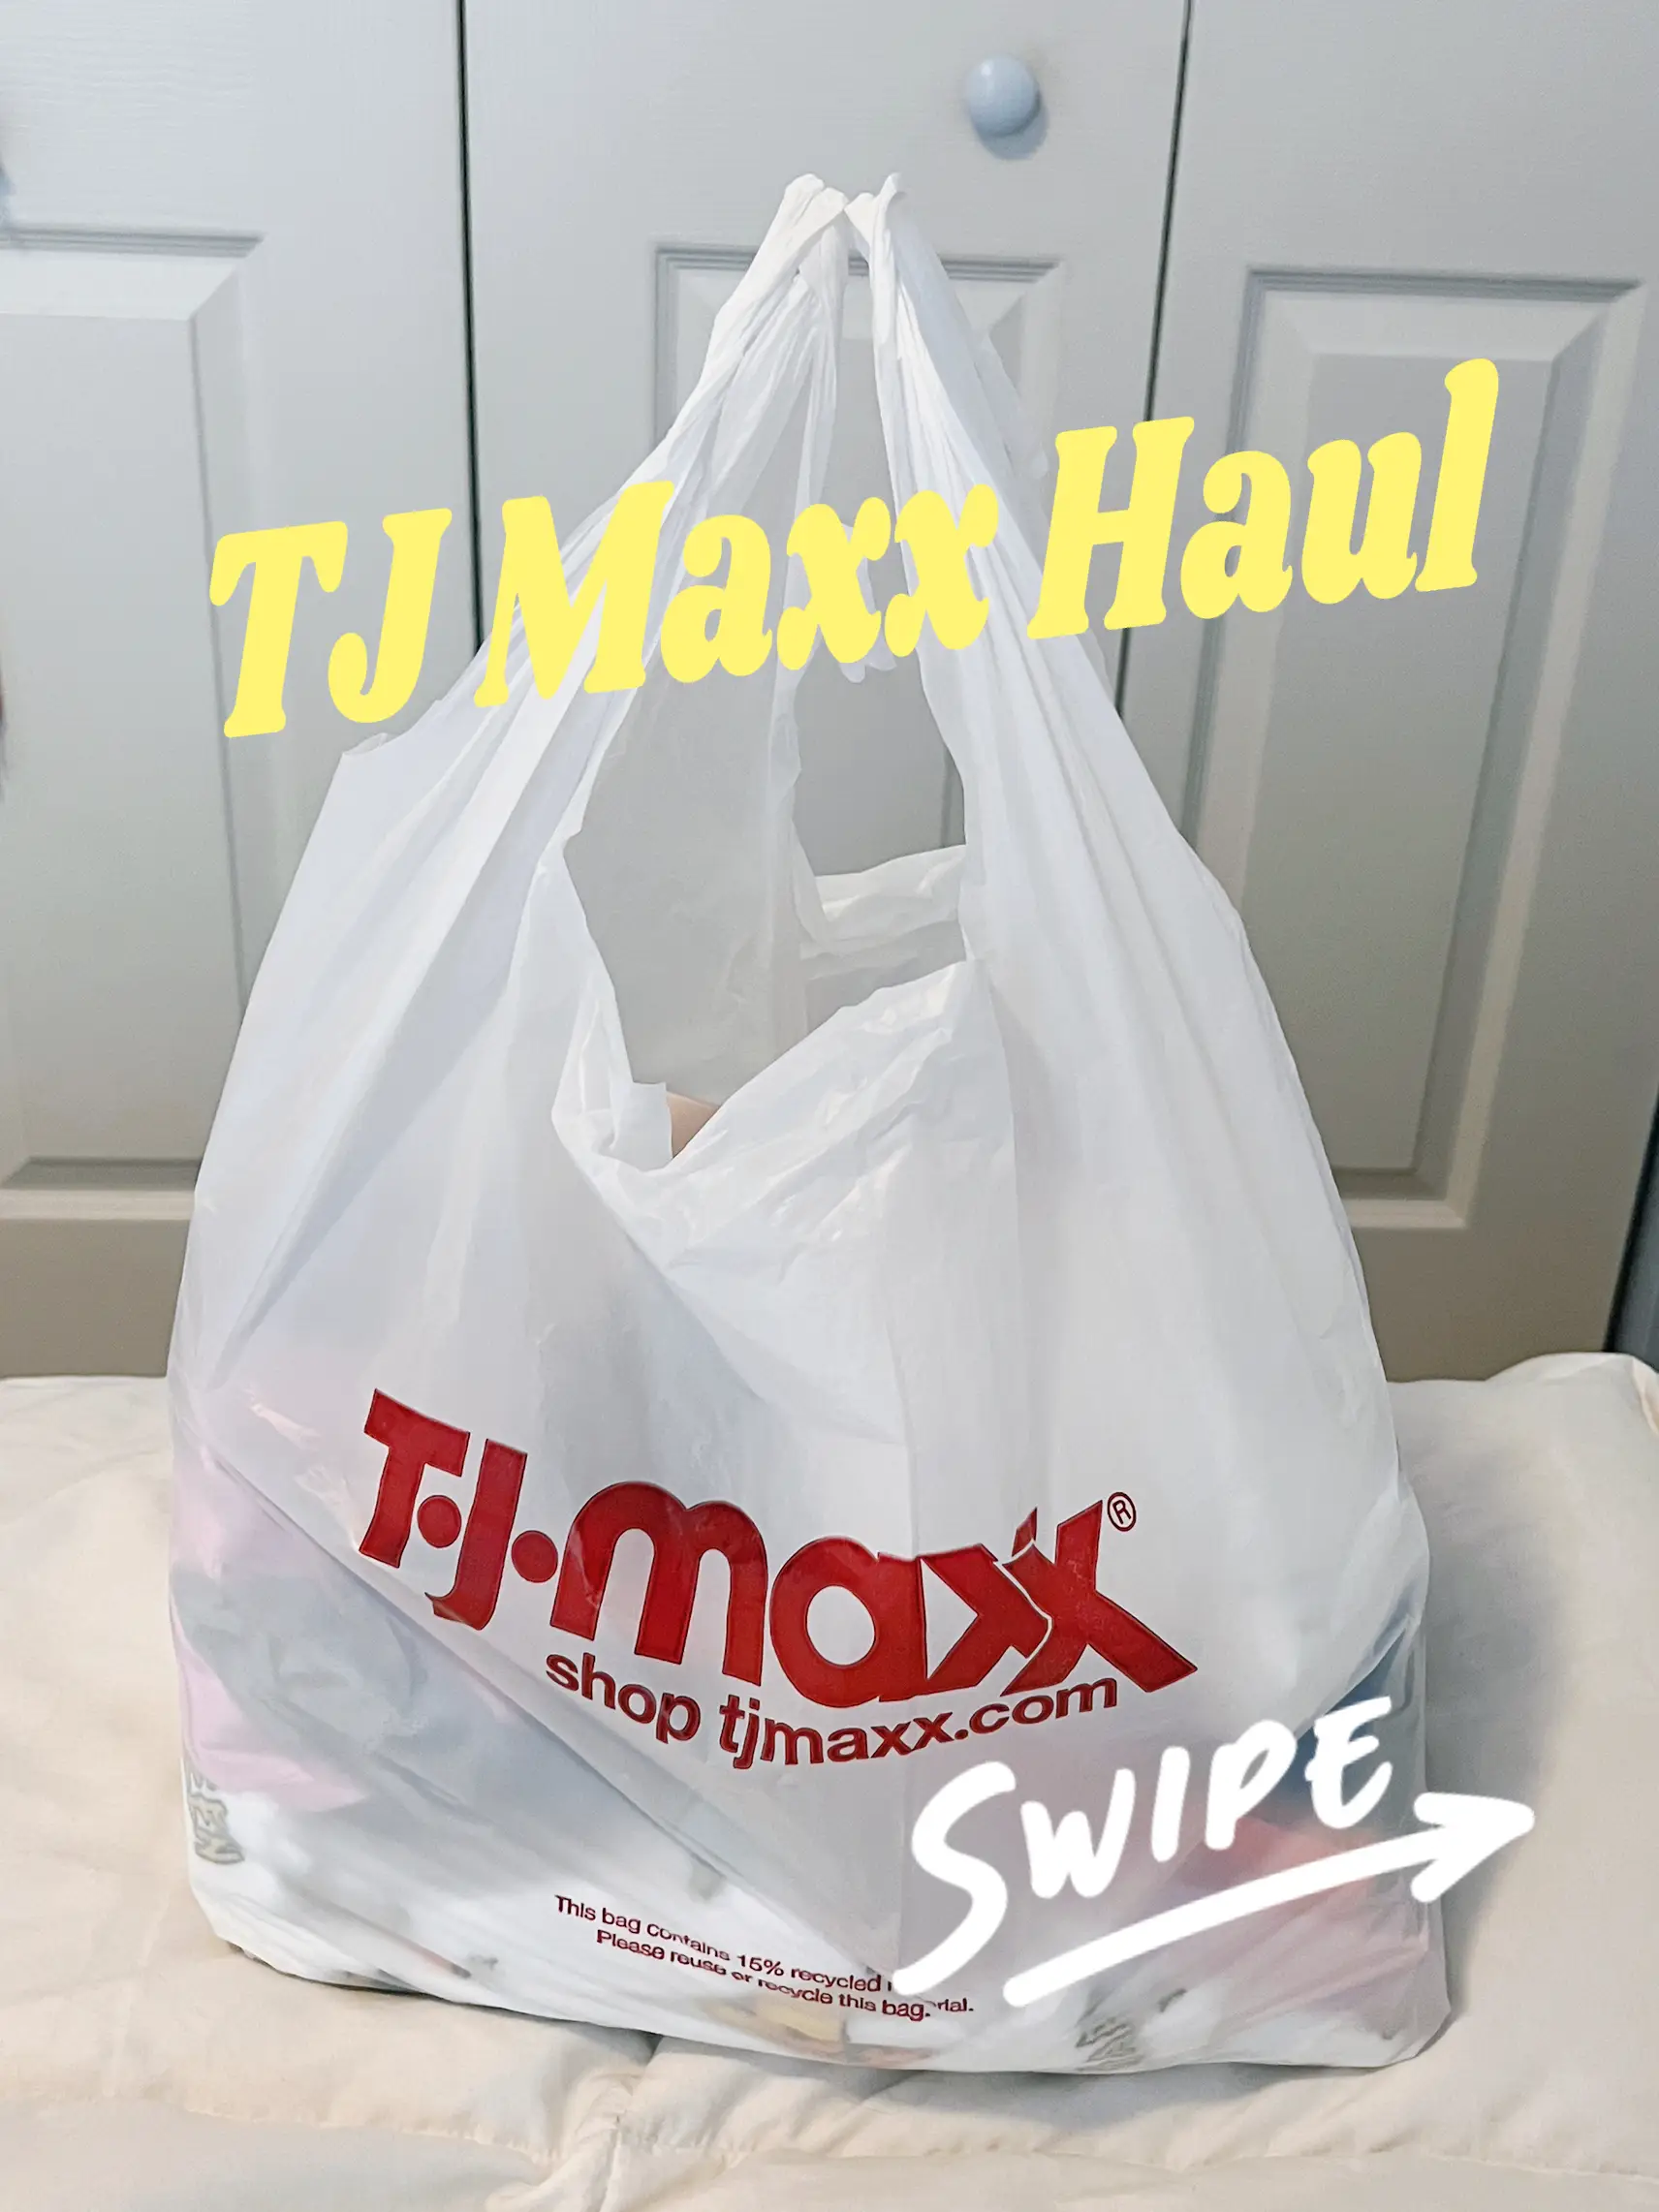 Tjmaxx finds.